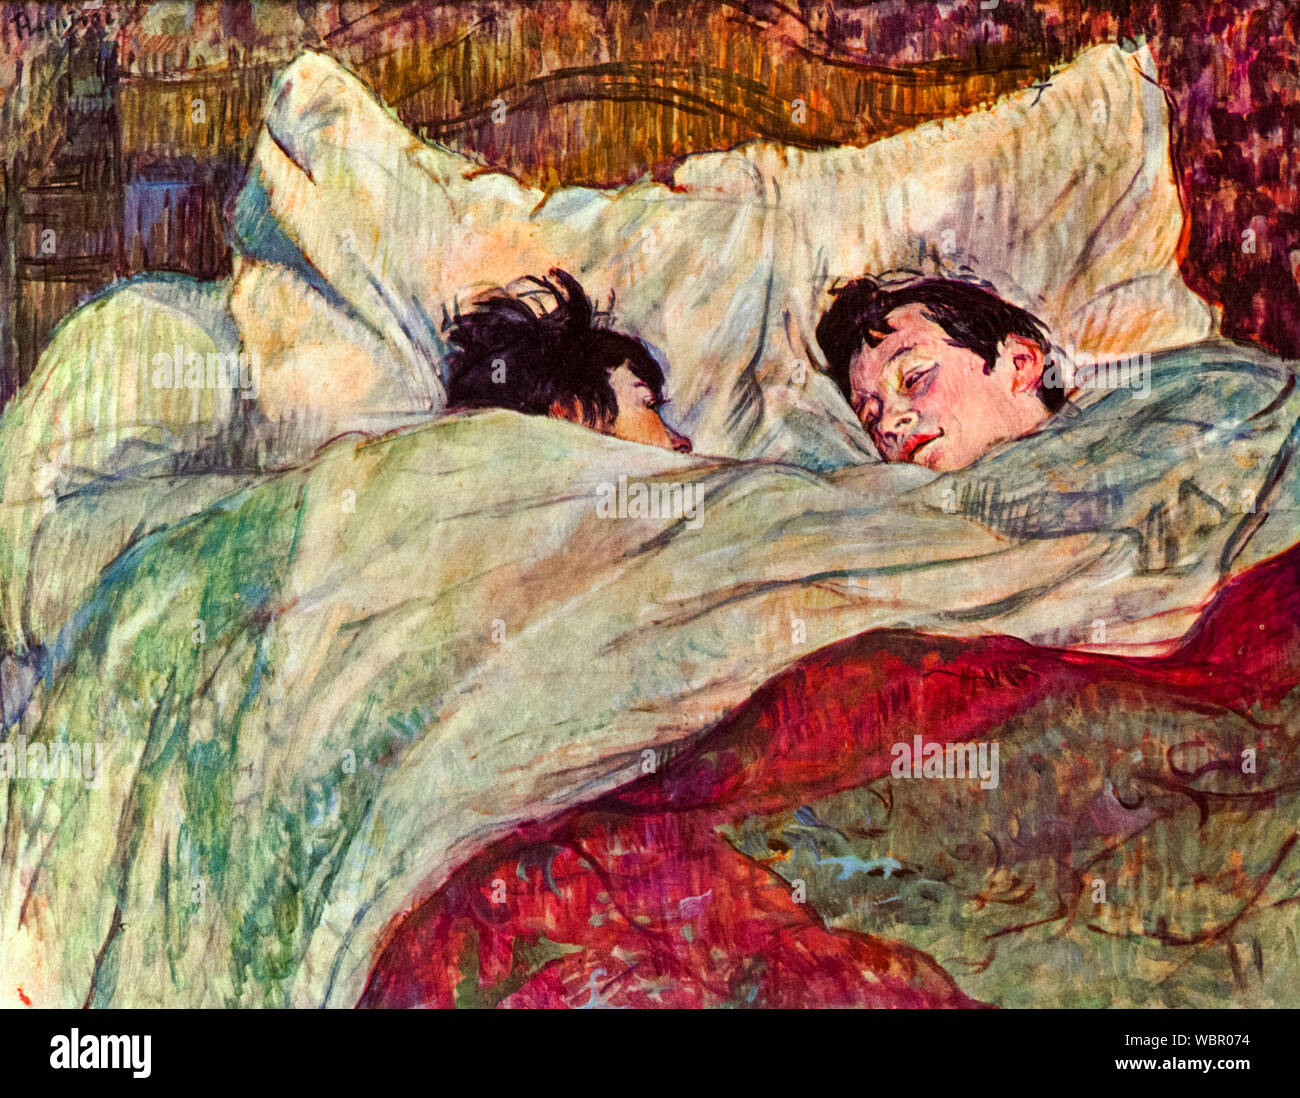 Henri de Toulouse Lautrec, Le Lit, (The Bed), painting, 1893 Stock Photo